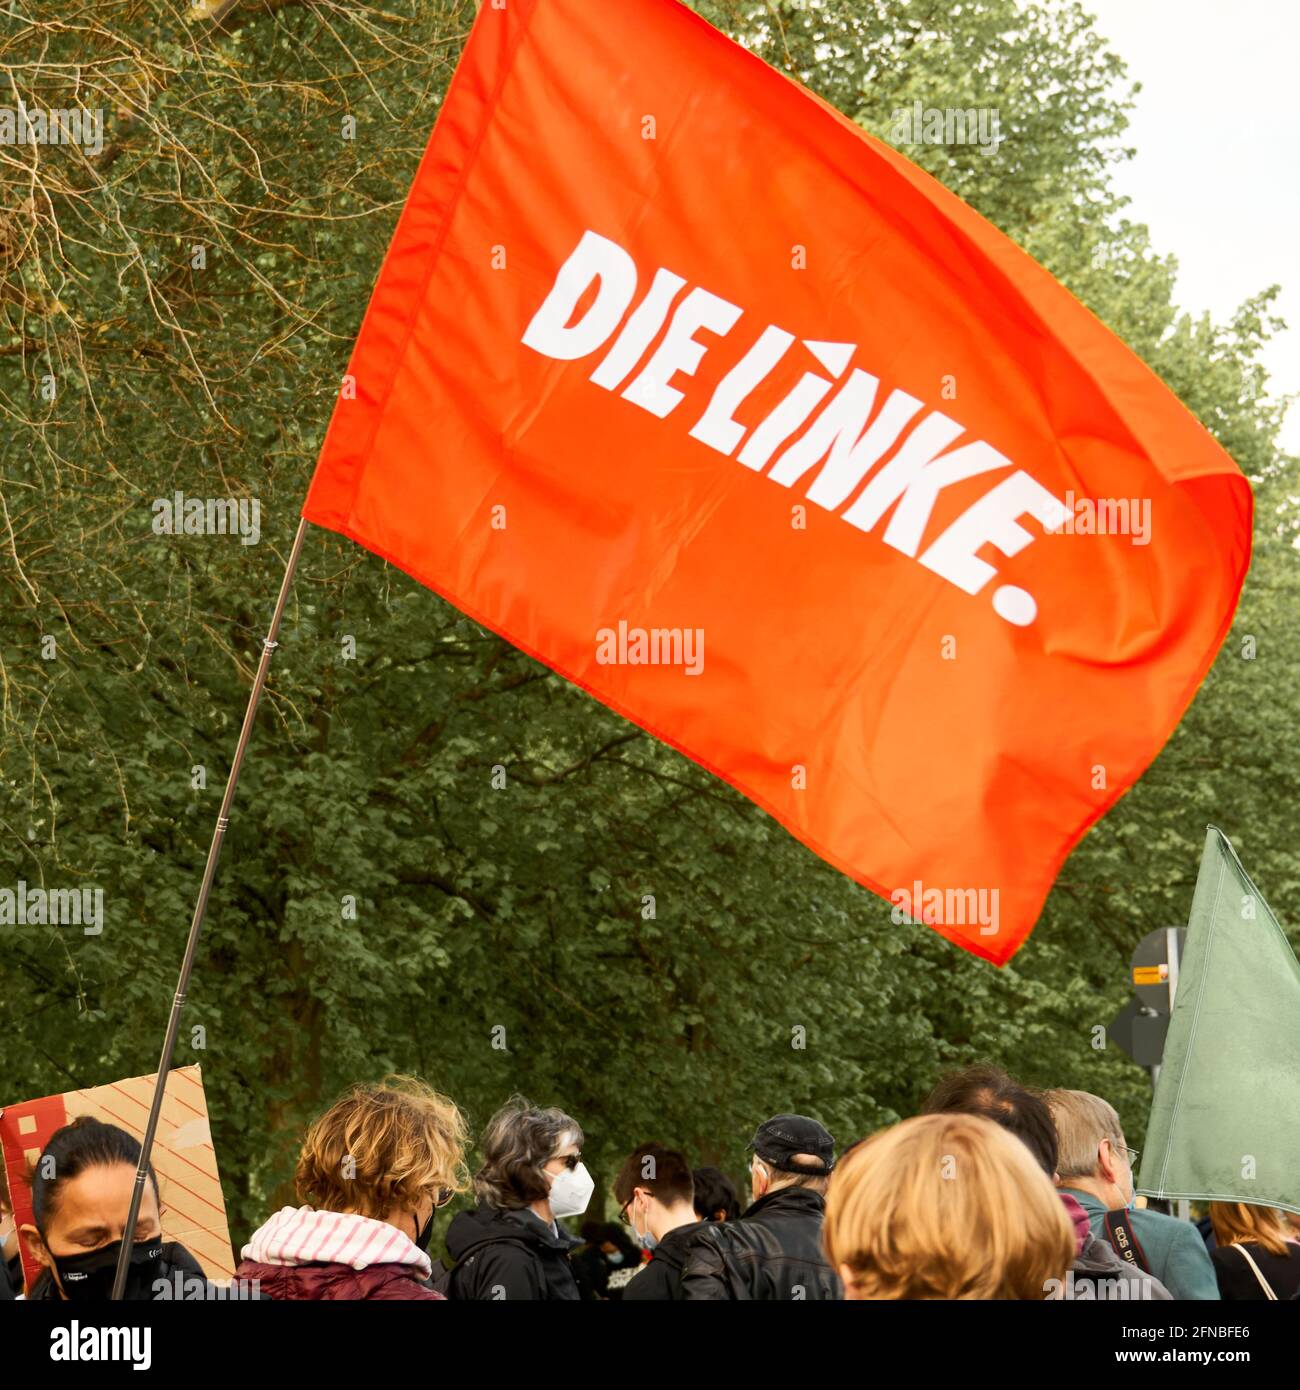 Braunschweig, 15. Mai 2021, Demonstration Parteitag der AFD: Rote Fahne der  linken Partei, die Linke, fliegt über die Köpfe der Demonstranten  Stockfotografie - Alamy